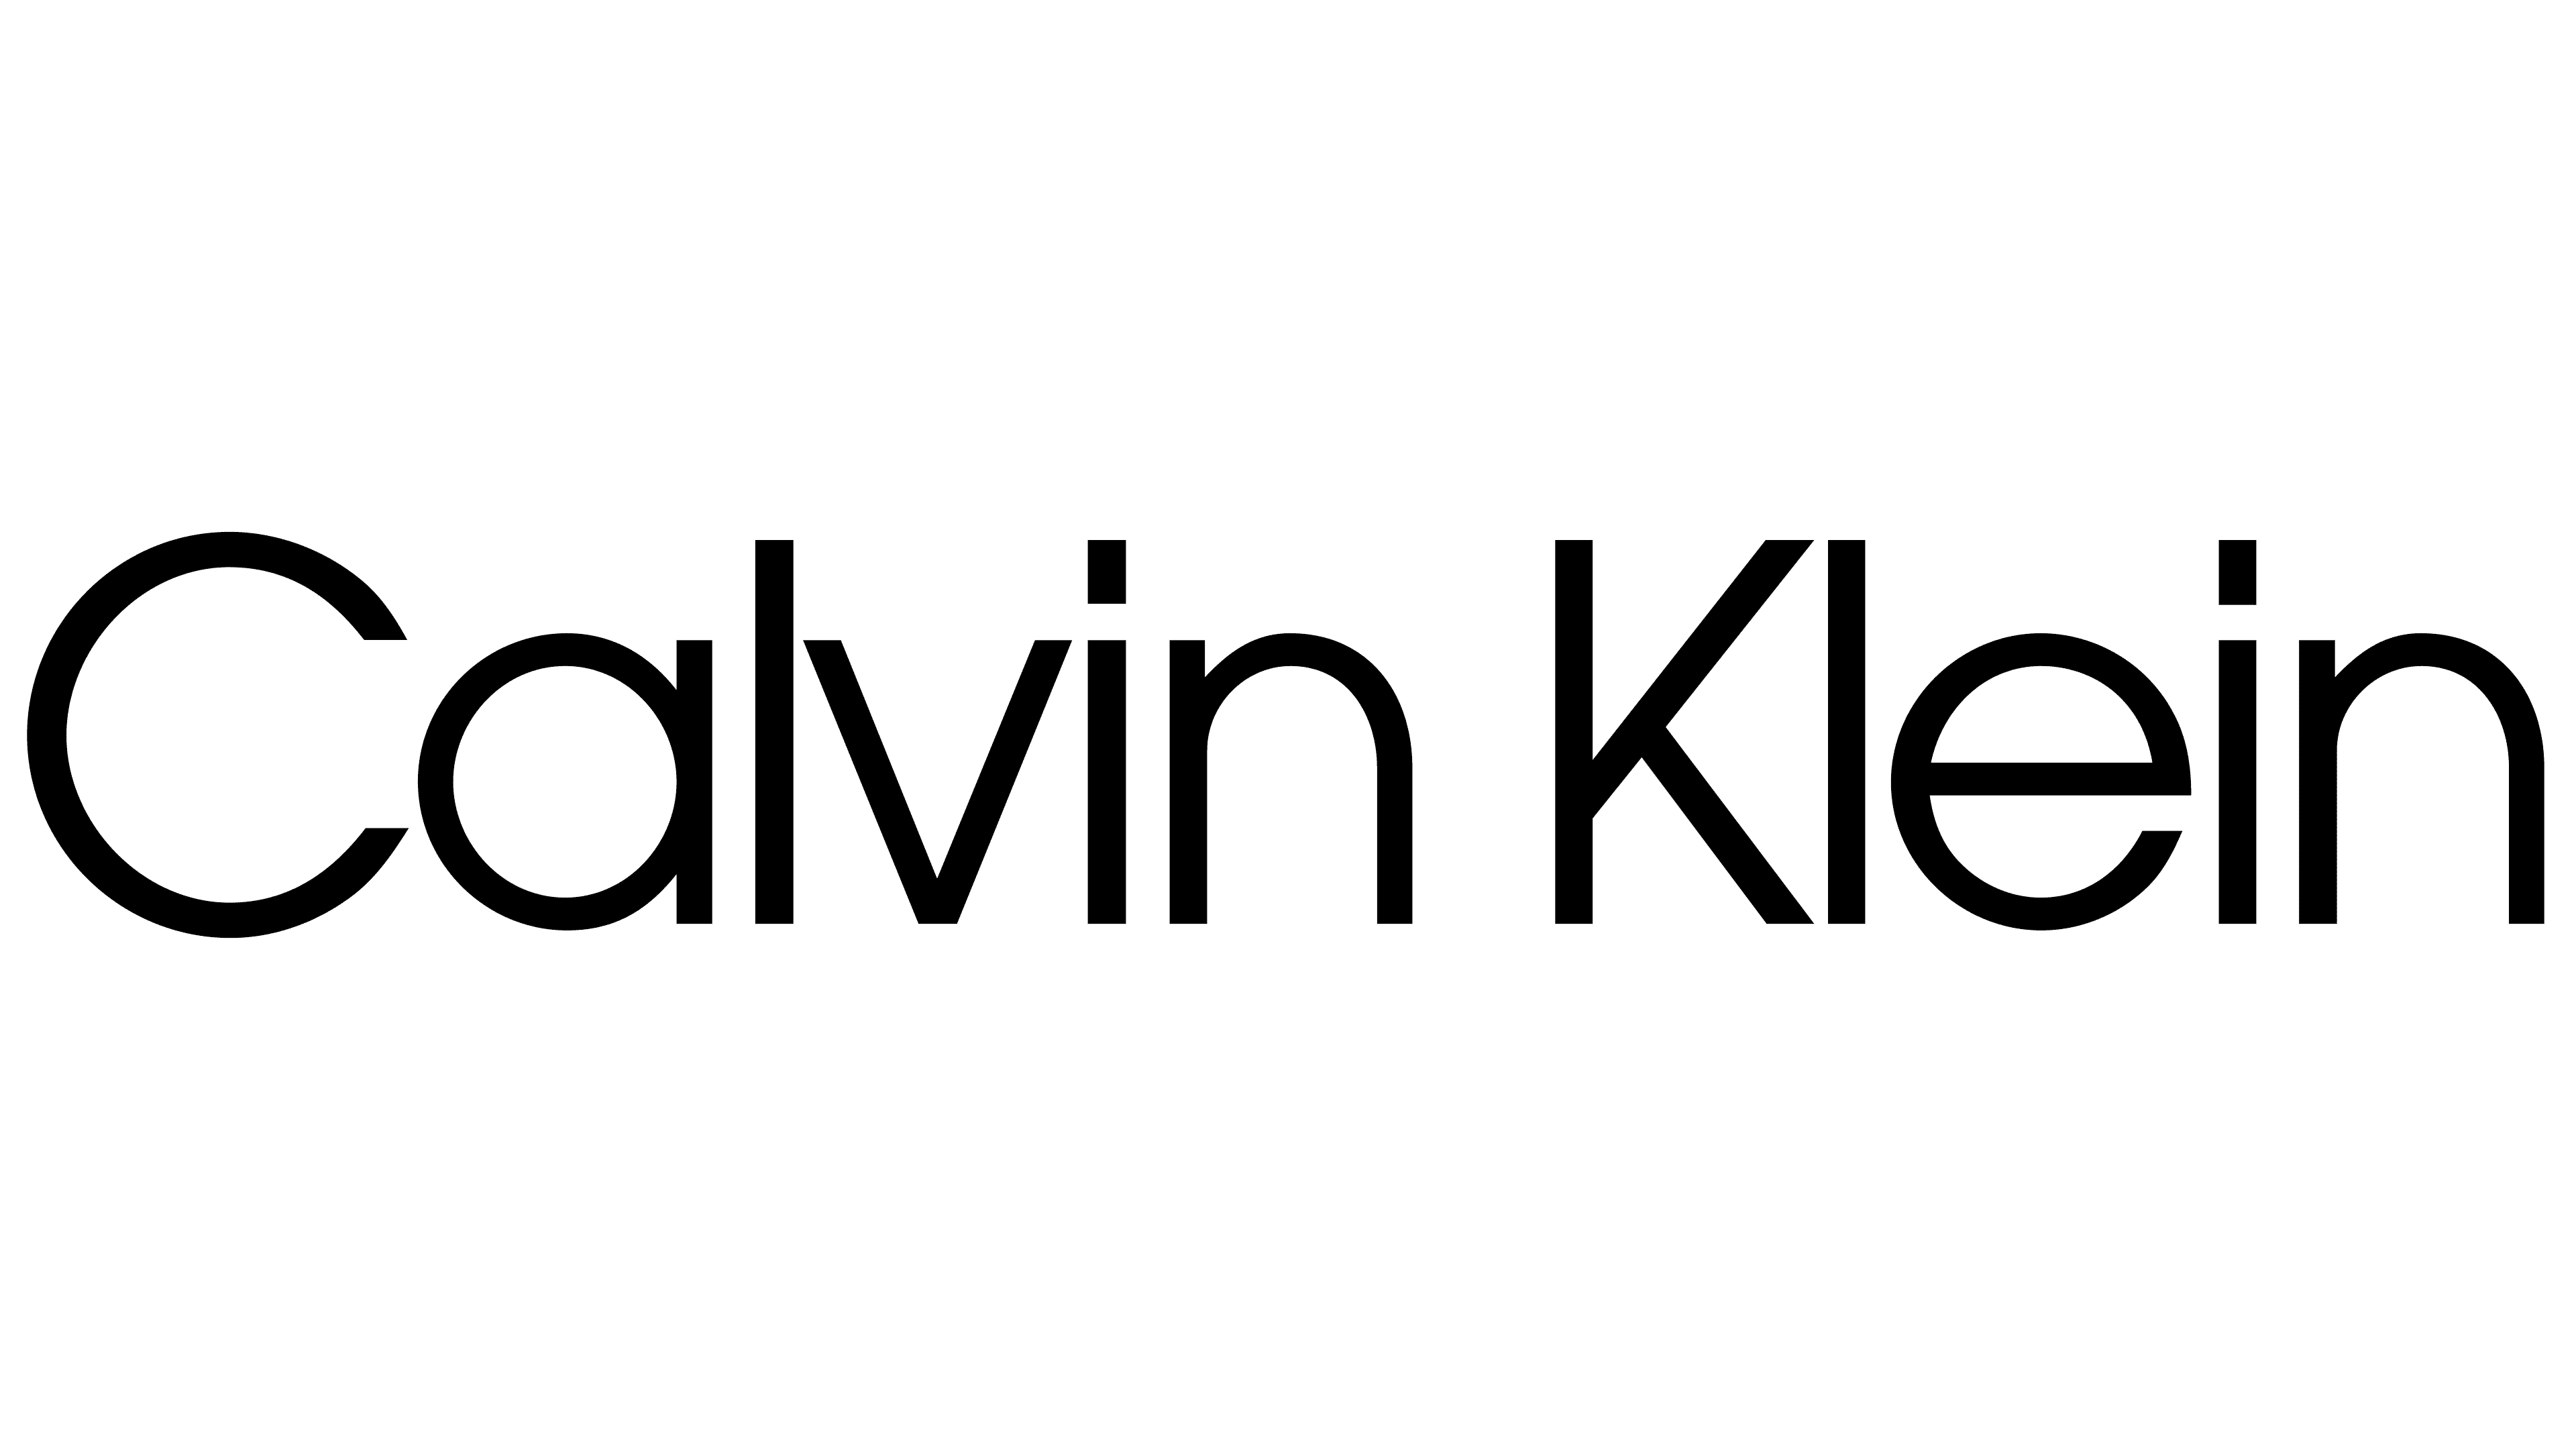 Calvin-Klein-logo